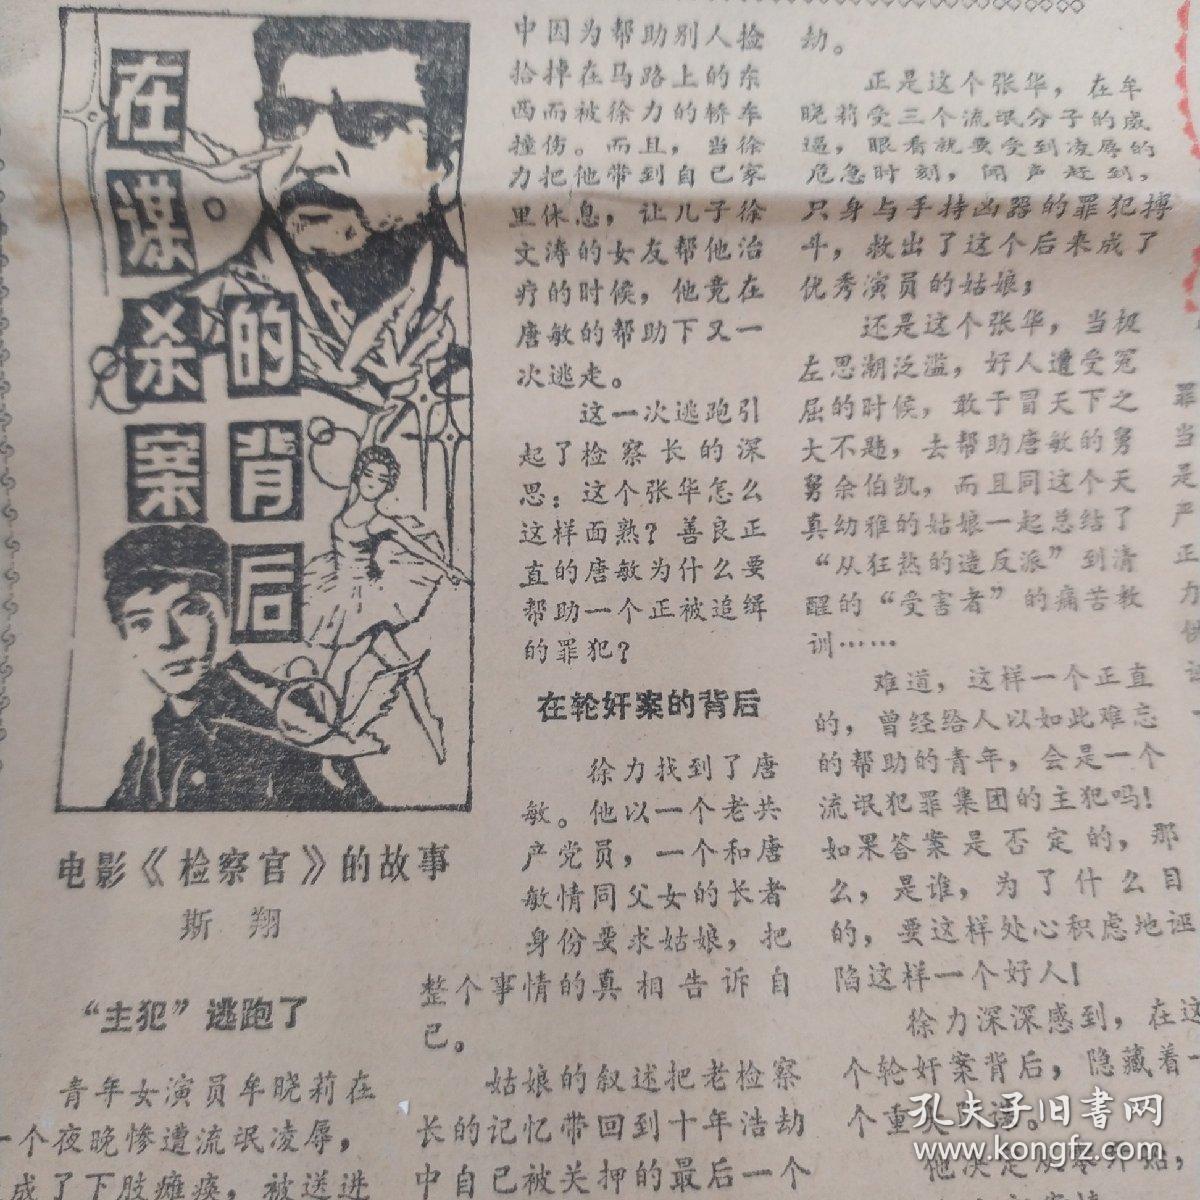 《文化广场》1981年10月 万琼初上银幕 鲁迅作品在汉展览  在谋杀案的背后   电影皇后胡蝶  月湖女侠  大仲马的父亲是黑人